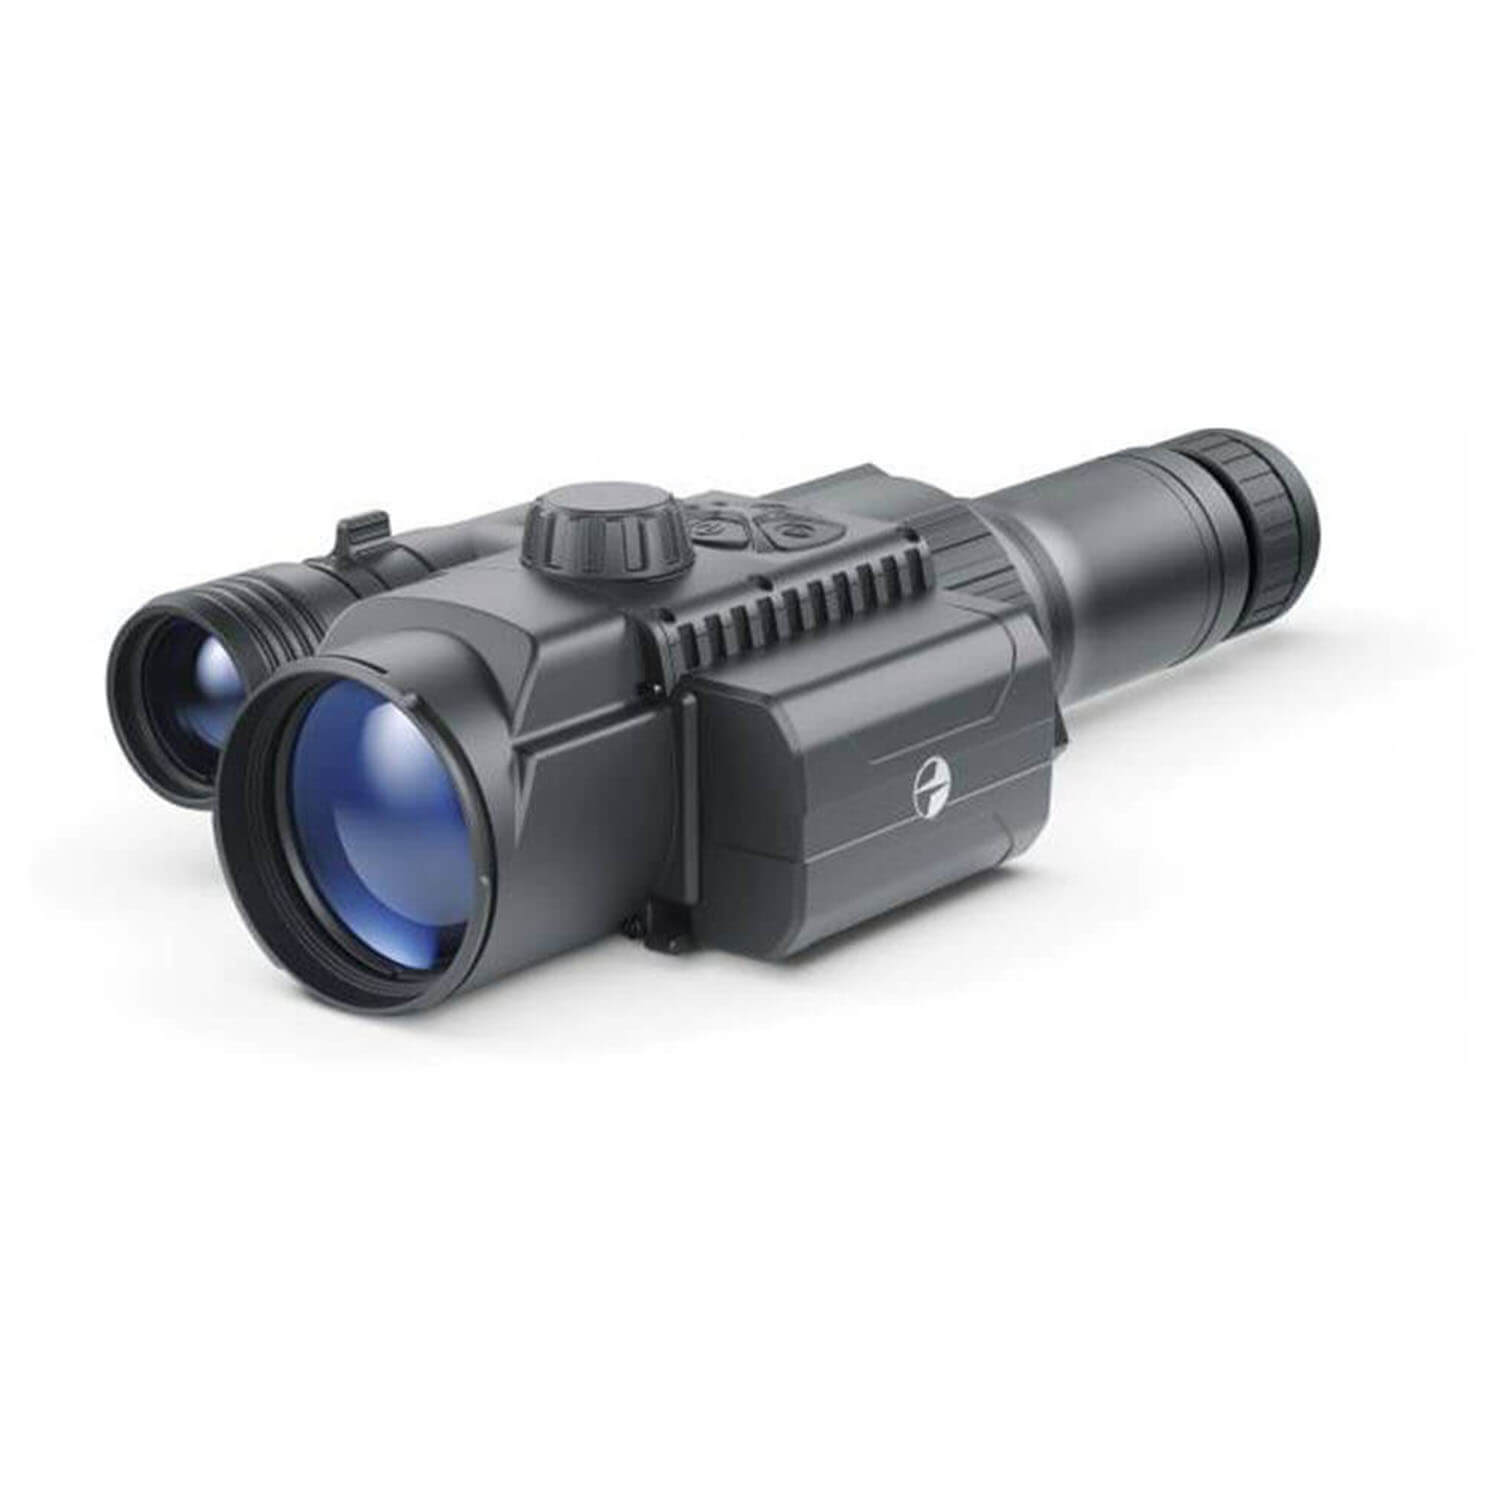 Pulsar FN-455S Digitalnachtsichtgerät